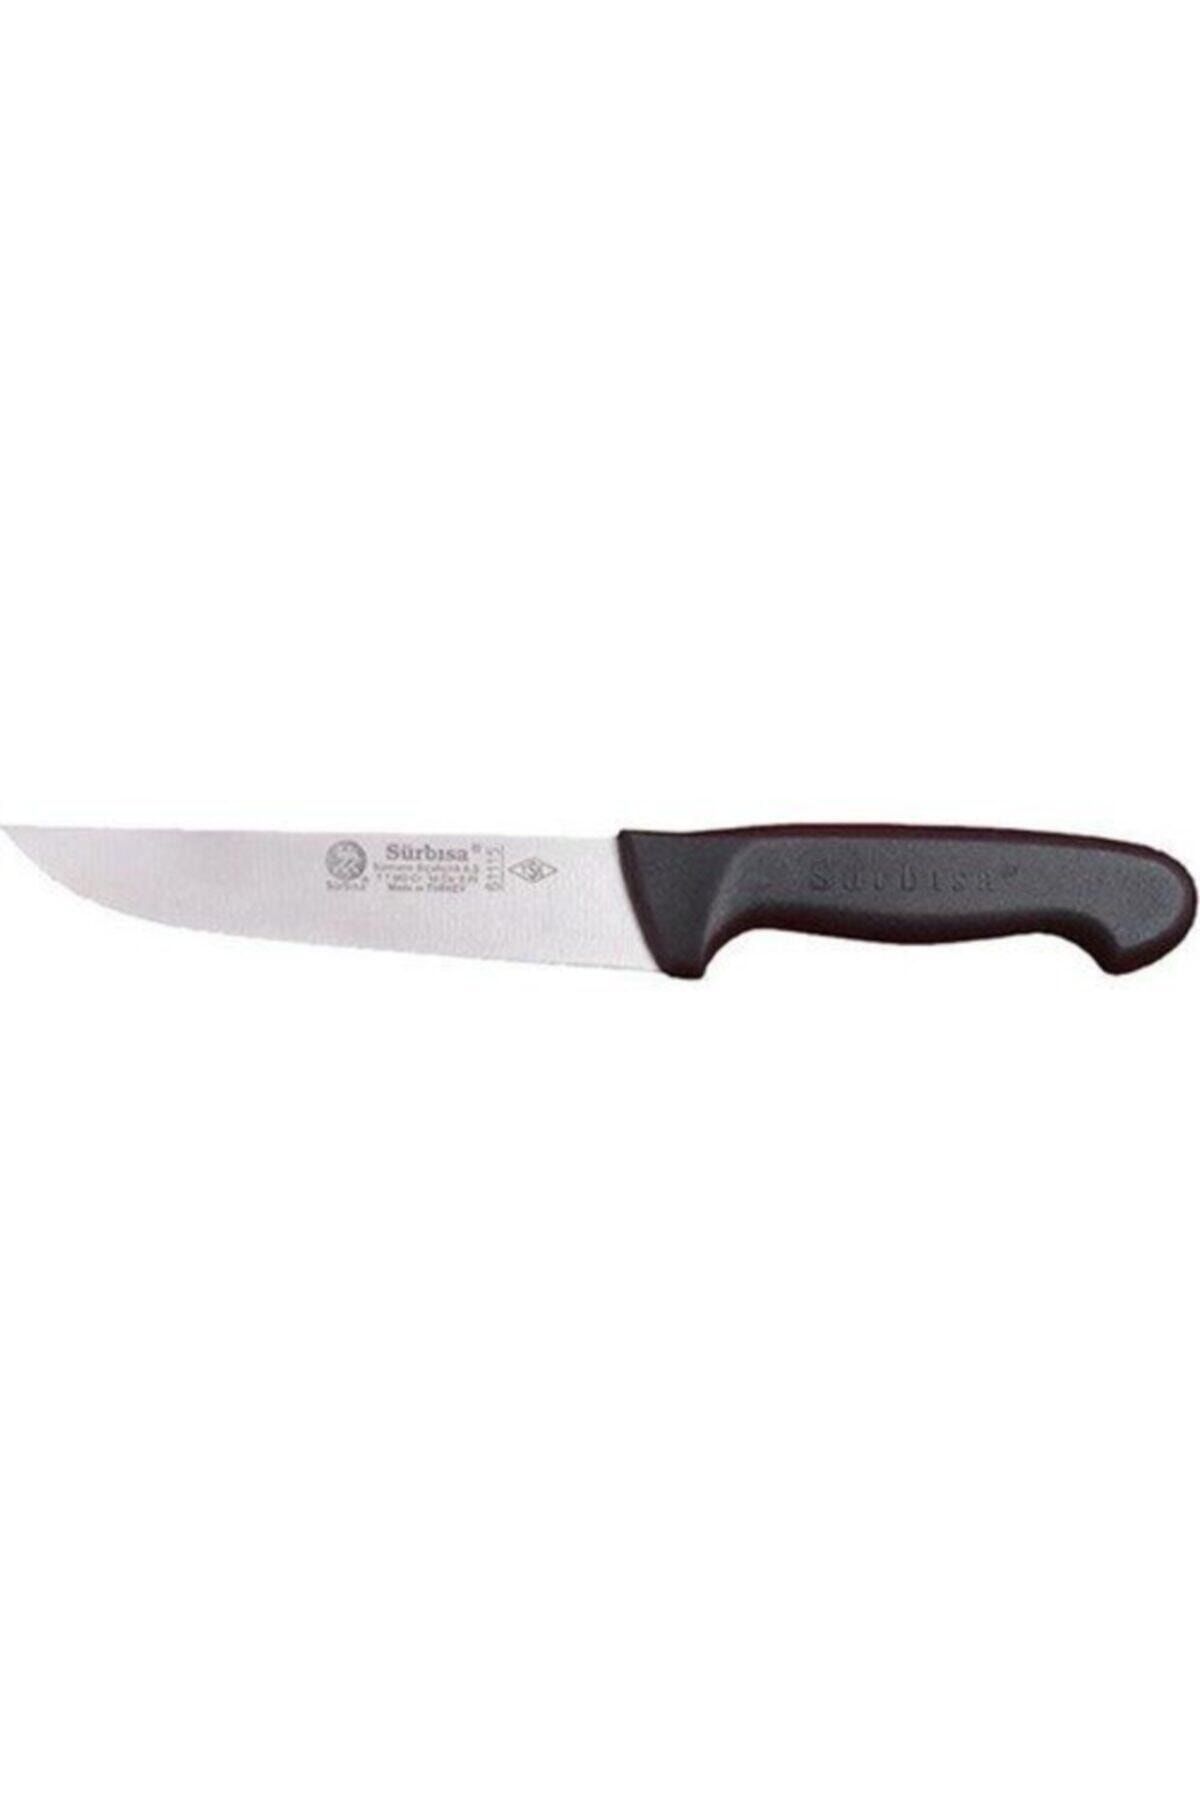 Sürbisa Sürmene 61115 Mutfak Bıçağı (ağız Boyu: 16.50 Cm)